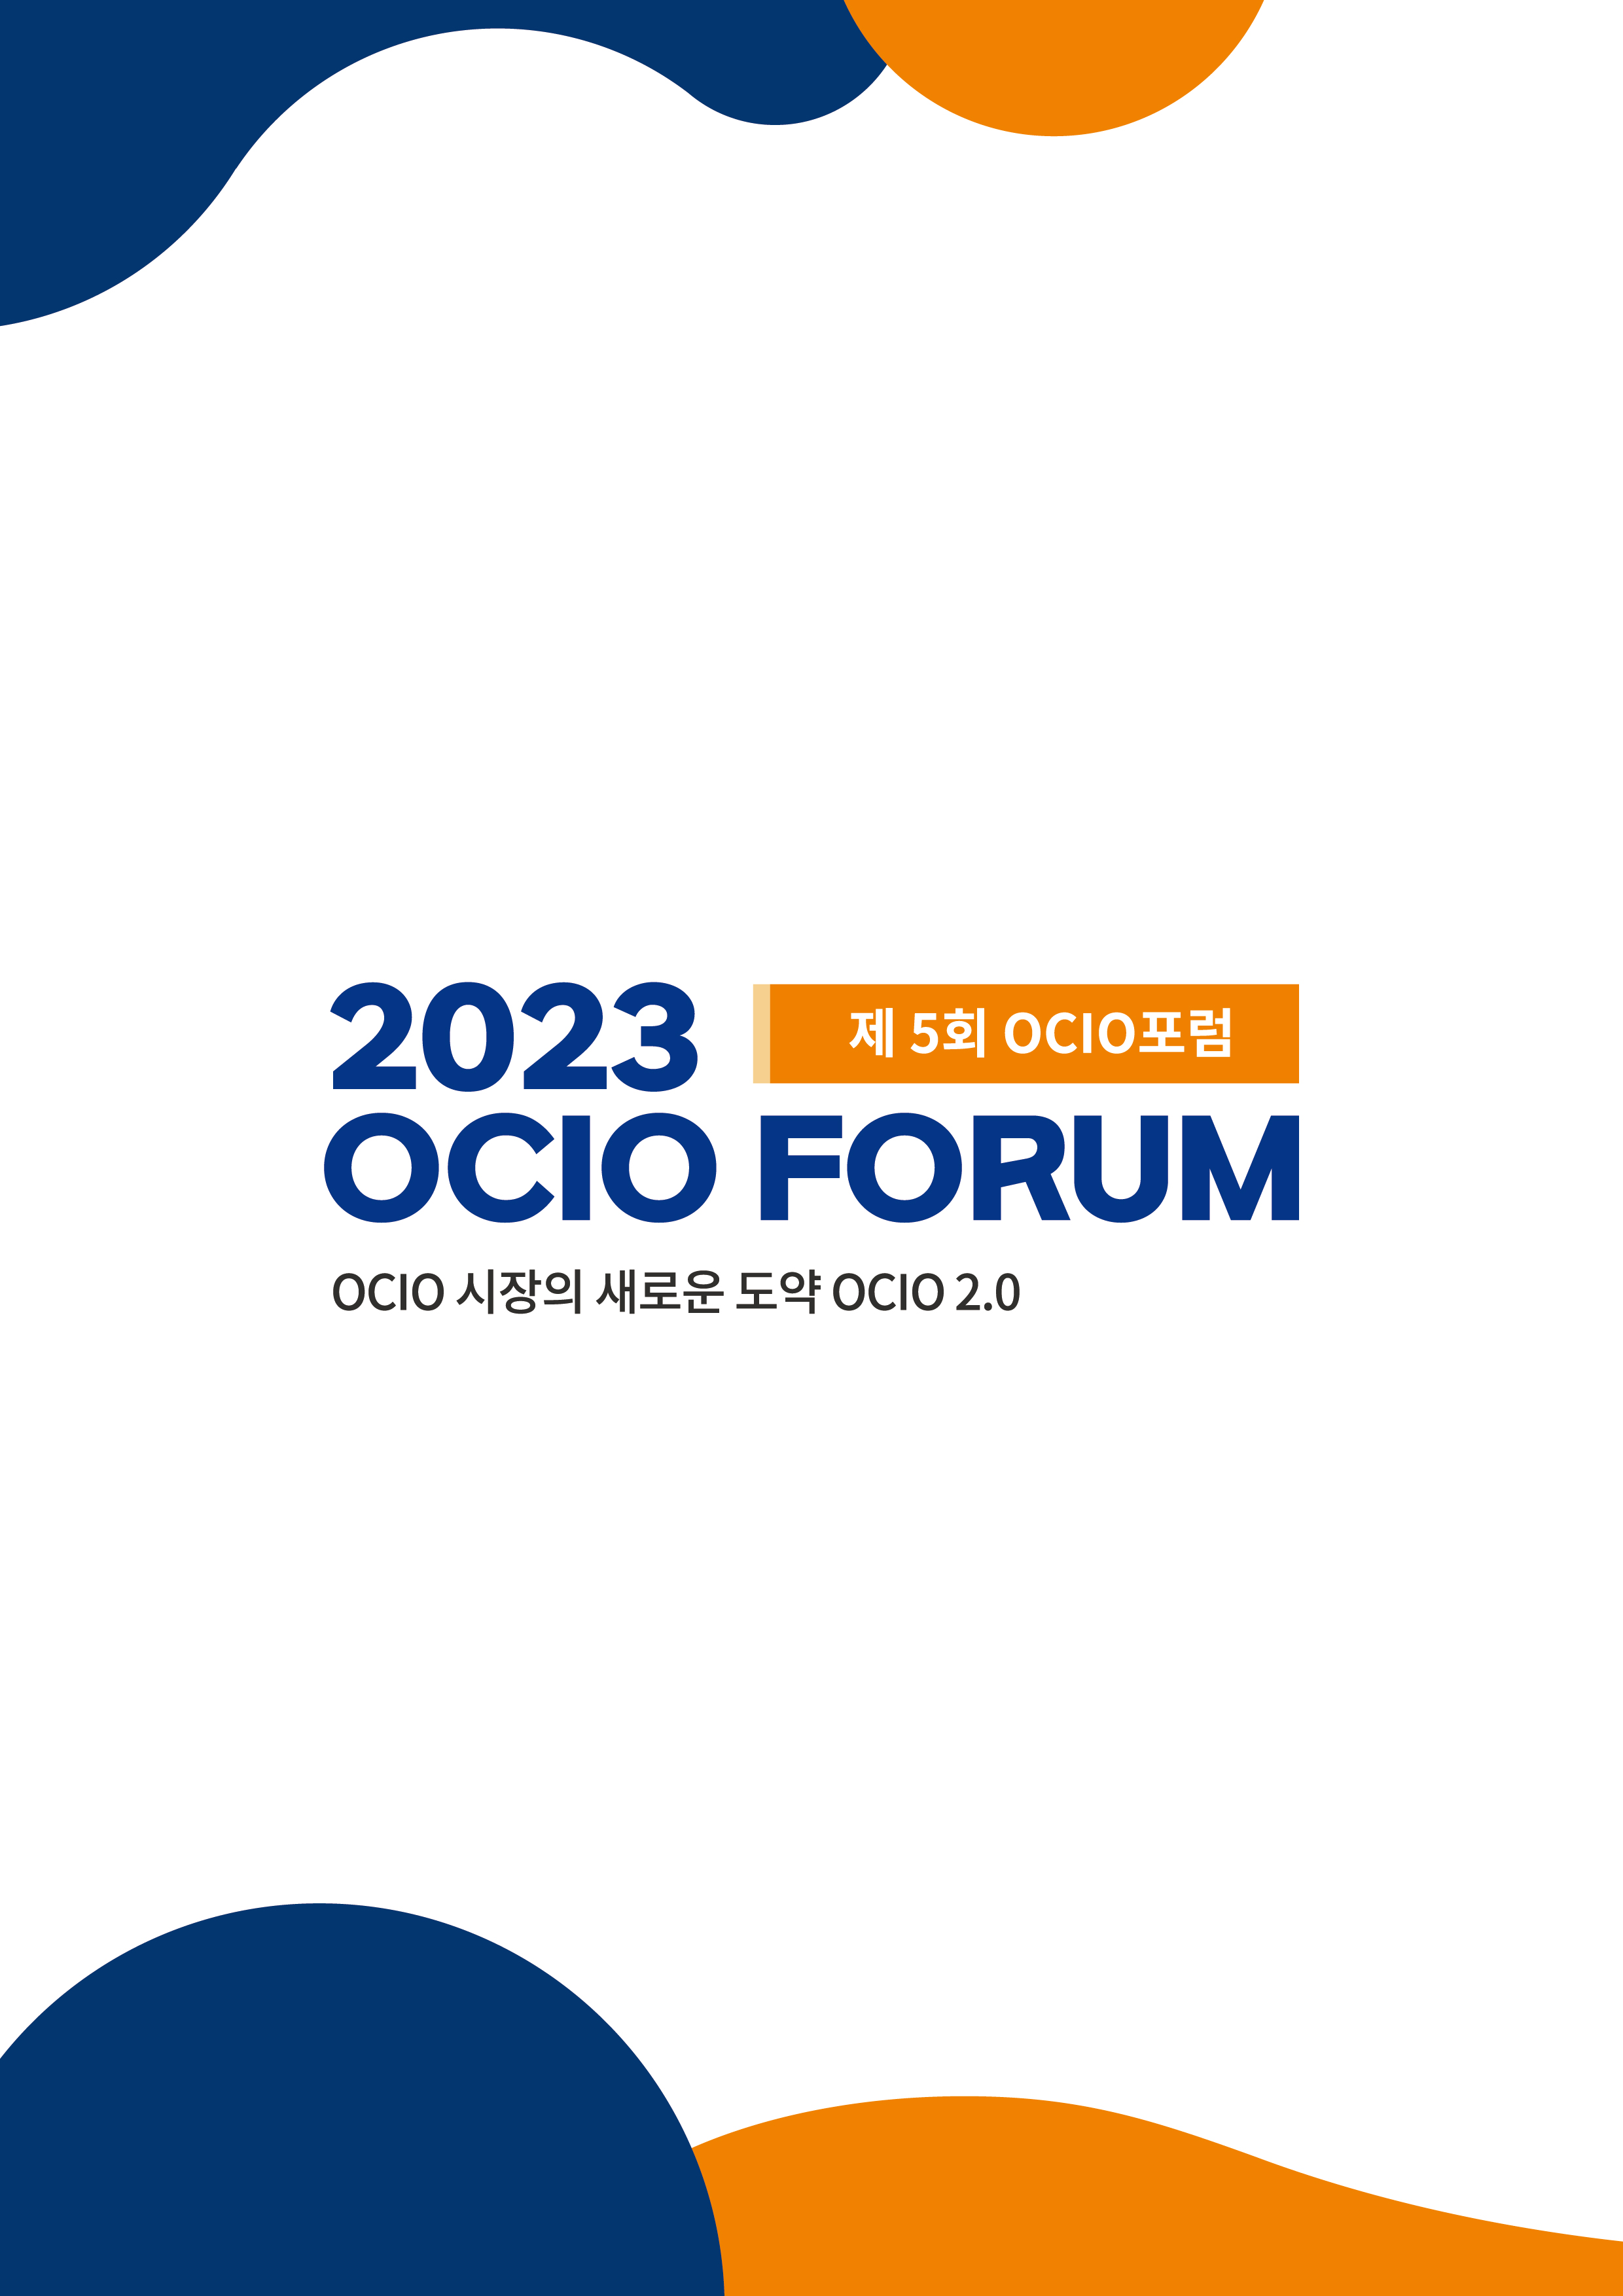 2023 제5회 OCIO 포럼 개최 및 자료 다운로드 안내

